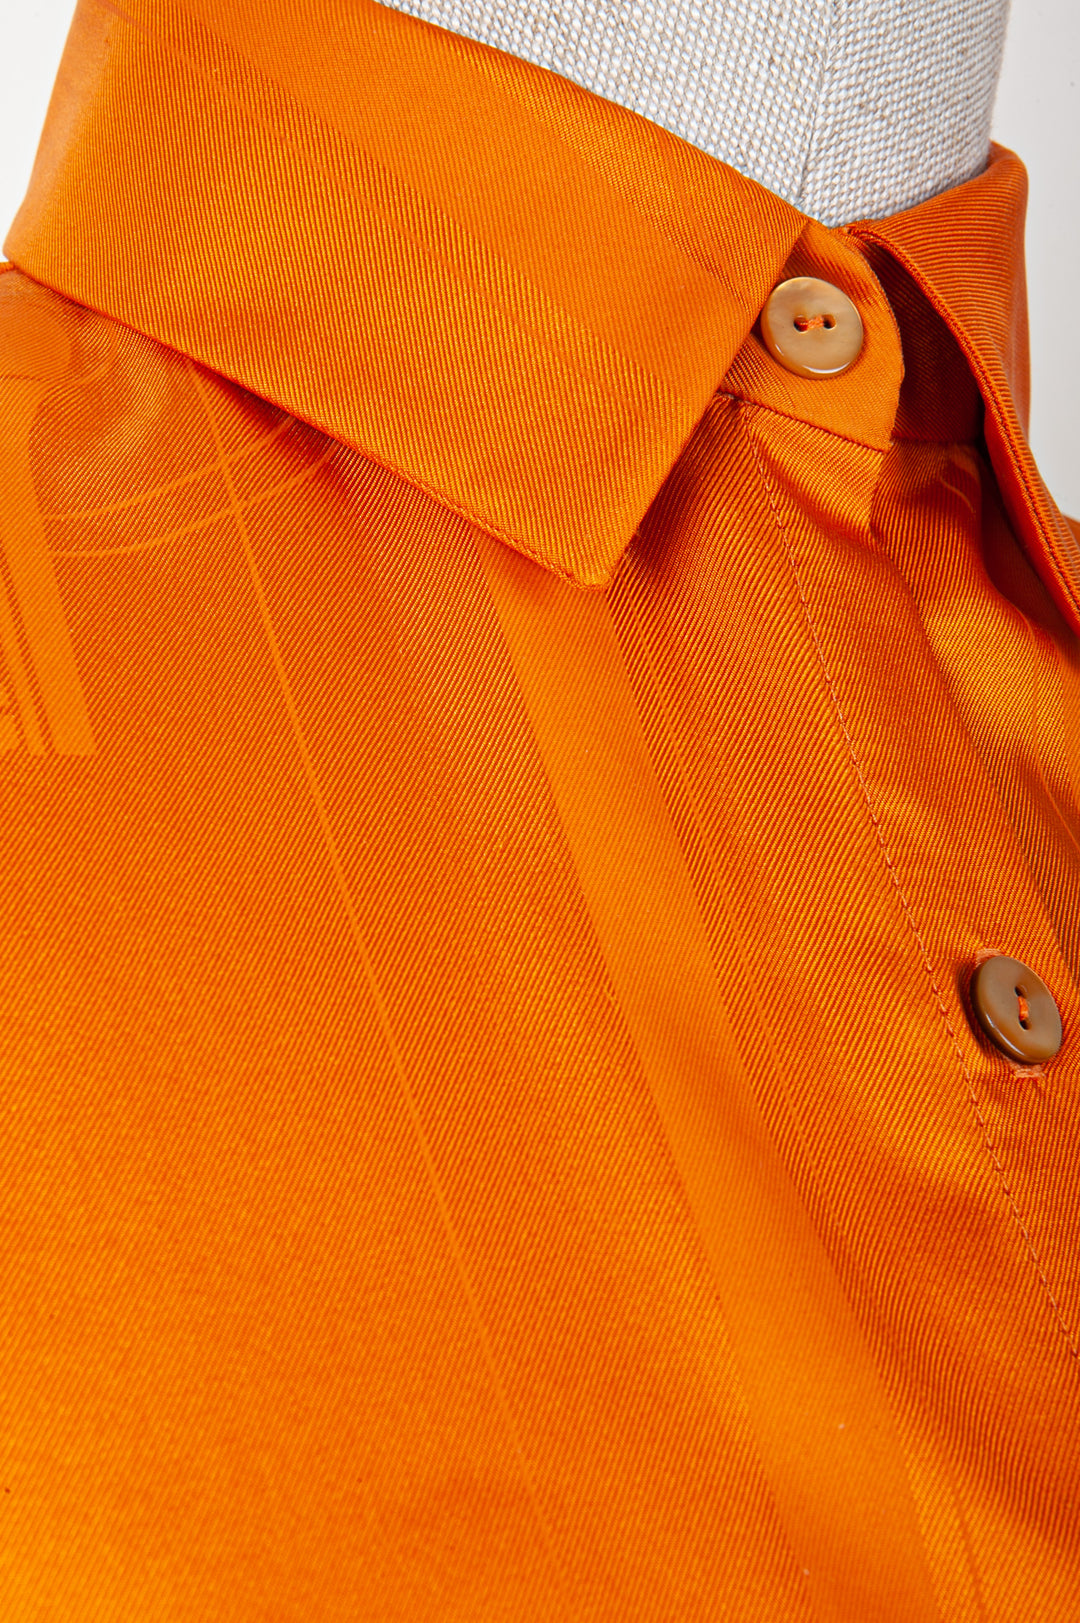 REAWAKE ATELIER Hermès/Fendi Top Orange